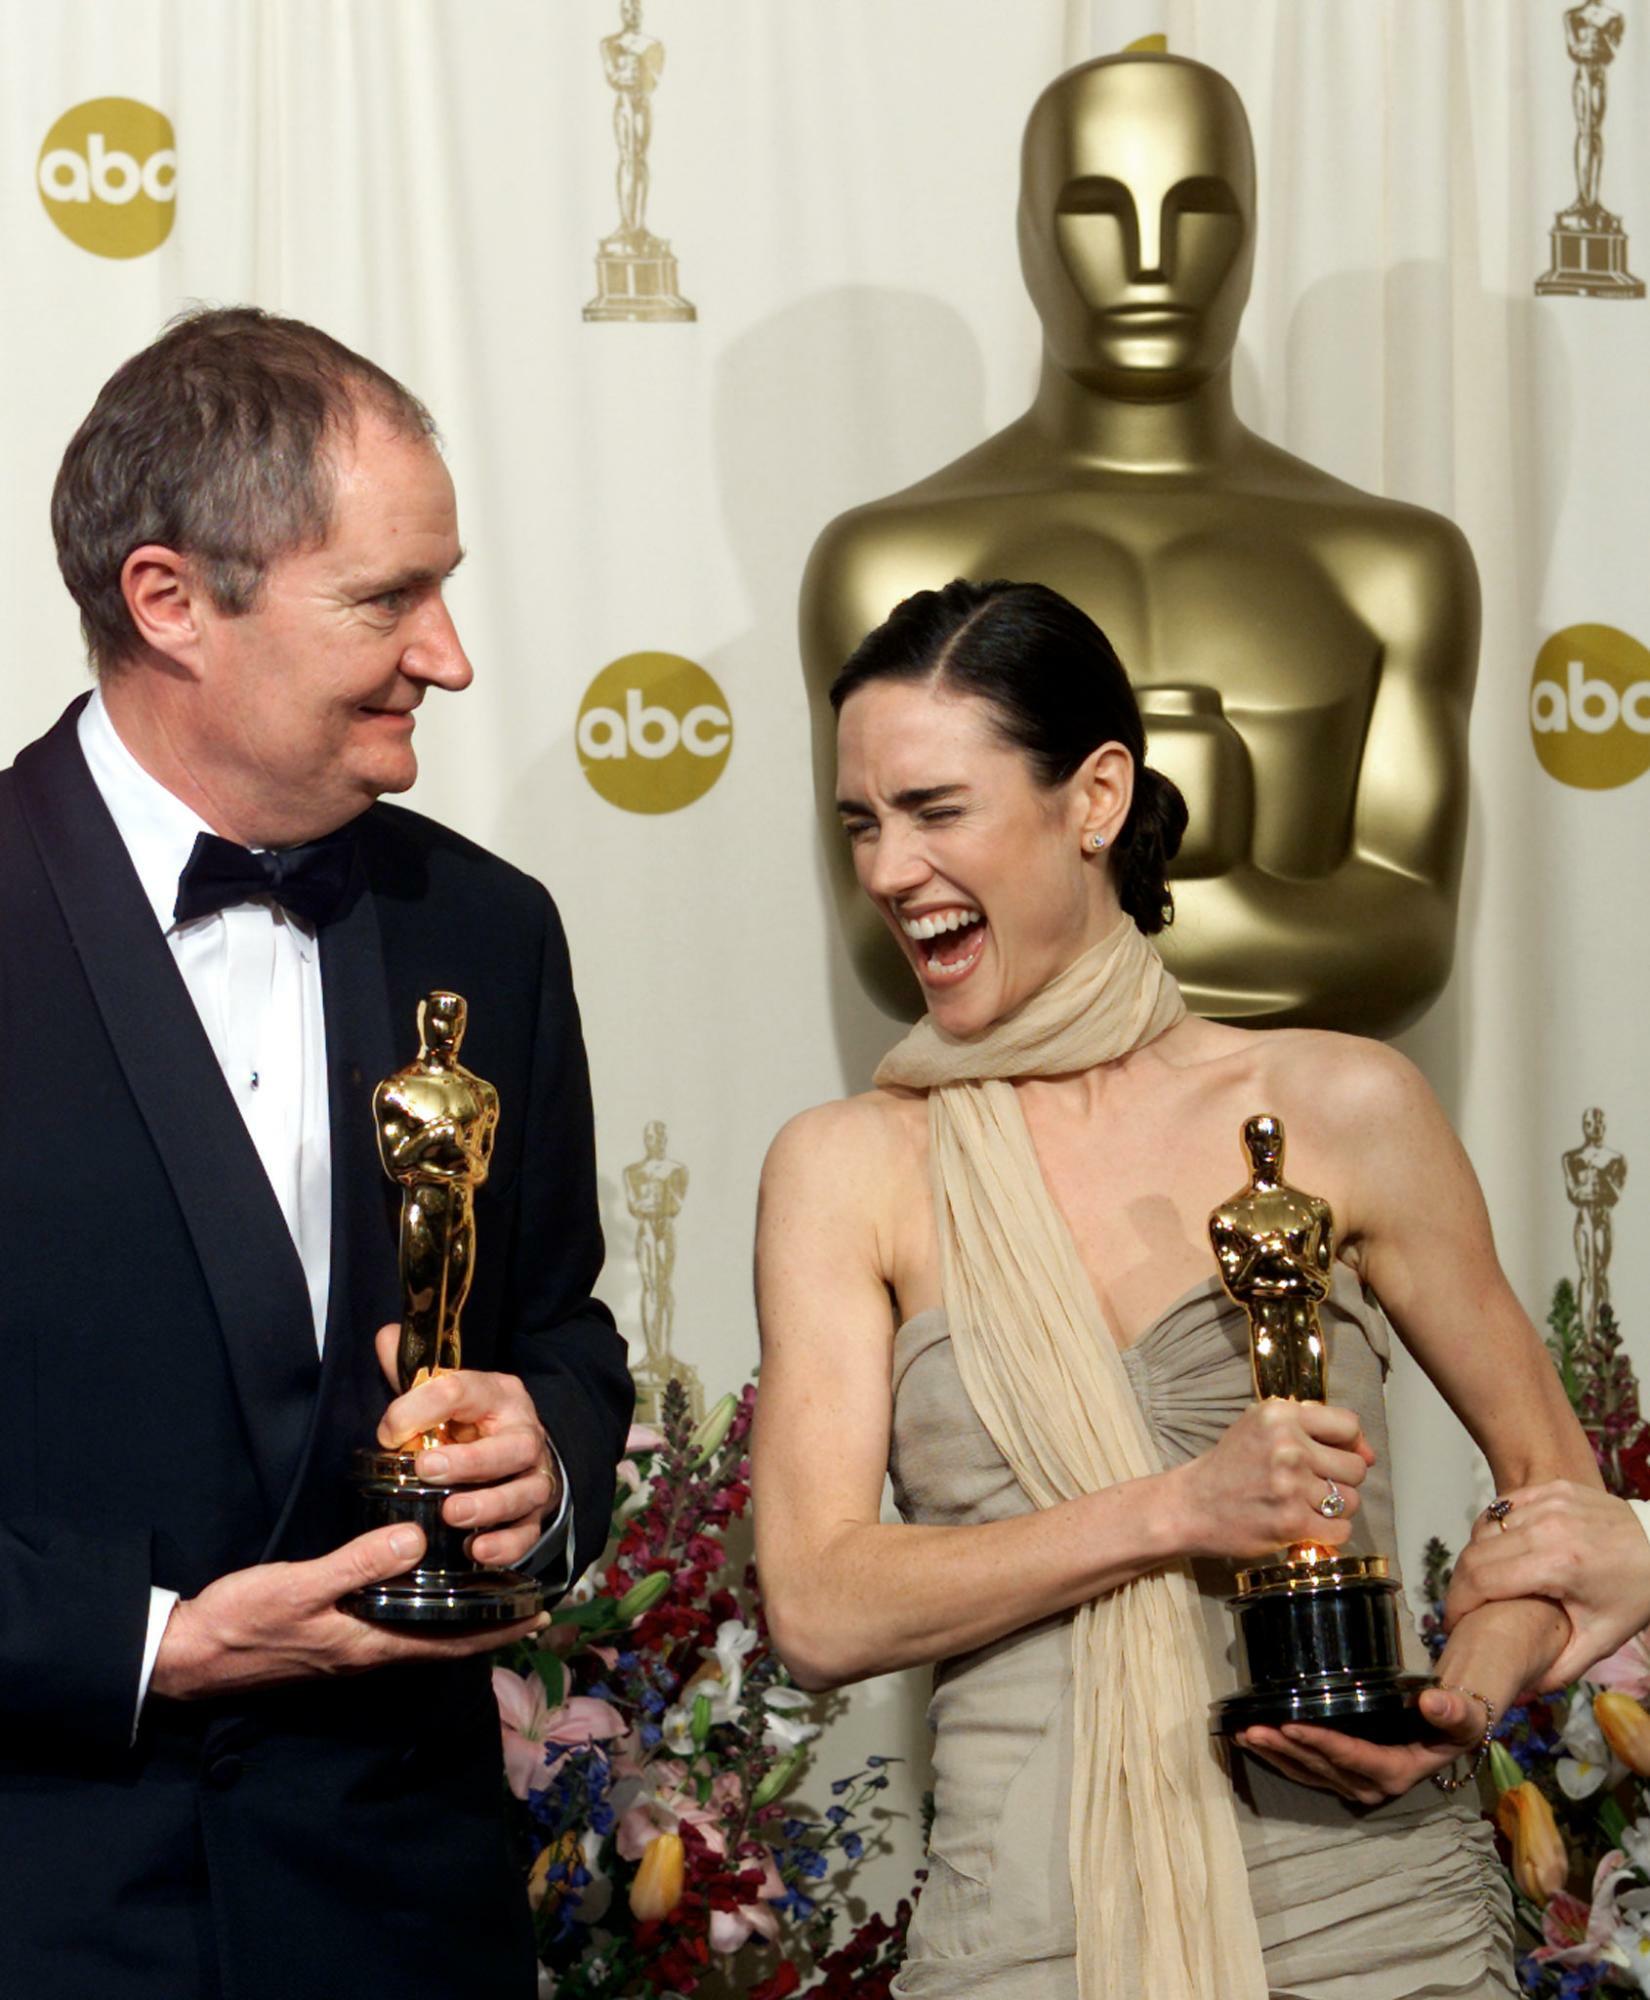 『アイリス』でアカデミー賞助演男優賞を受賞したブロードベント。右は『ビューティフル・マインド』で助演女優賞のジェニファー・コネリー。